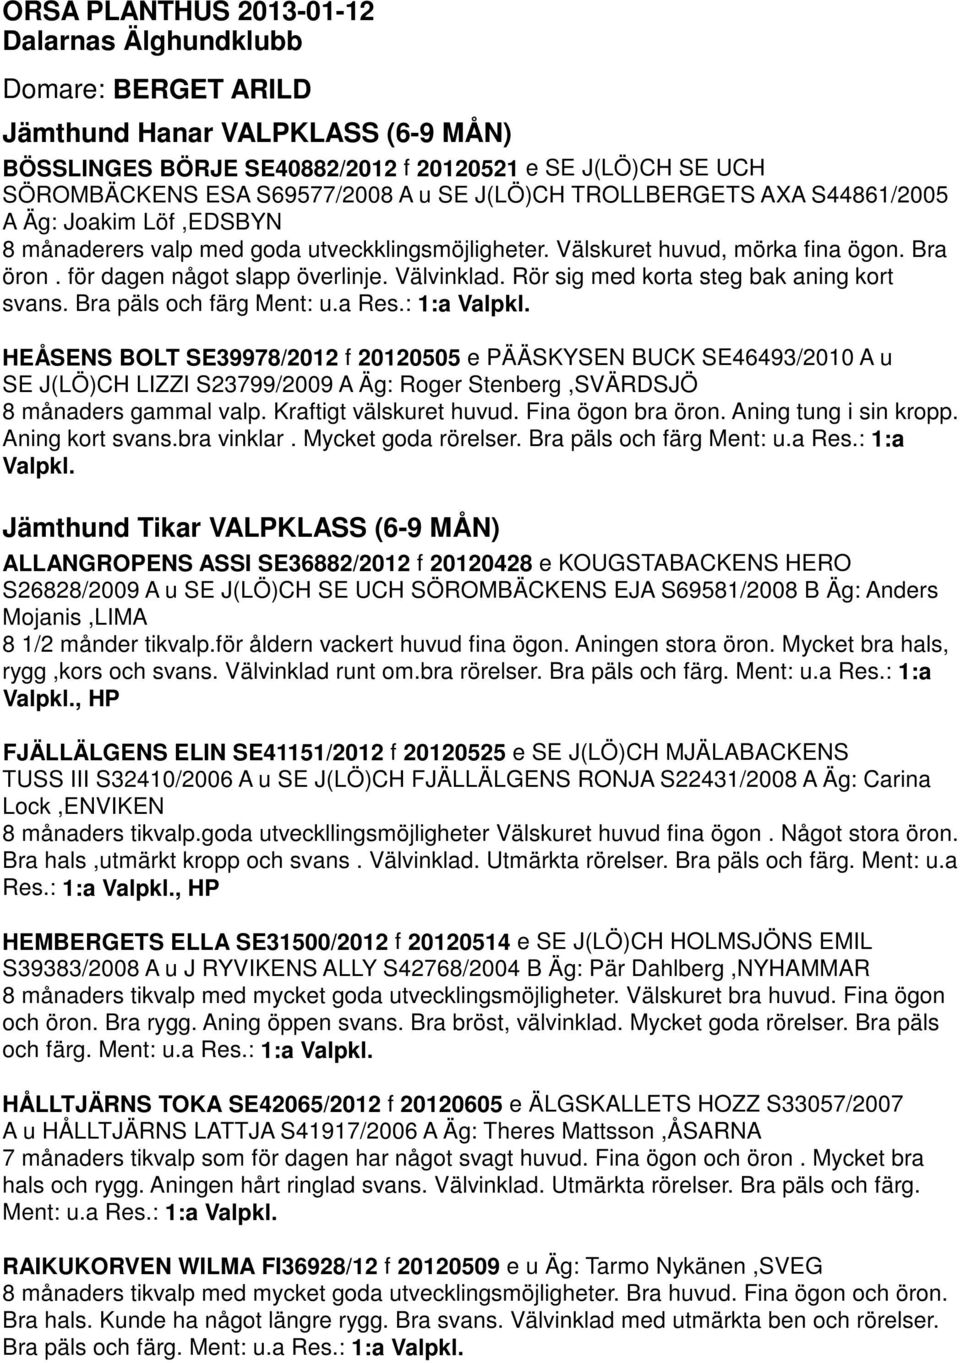 ORSA PLANTHUS Dalarnas Älghundklubb Domare: BERGET ARILD Jämthund Hanar  VALPKLASS (6-9 MÅN) Jämthund Tikar VALPKLASS (6-9 MÅN) - PDF Free Download